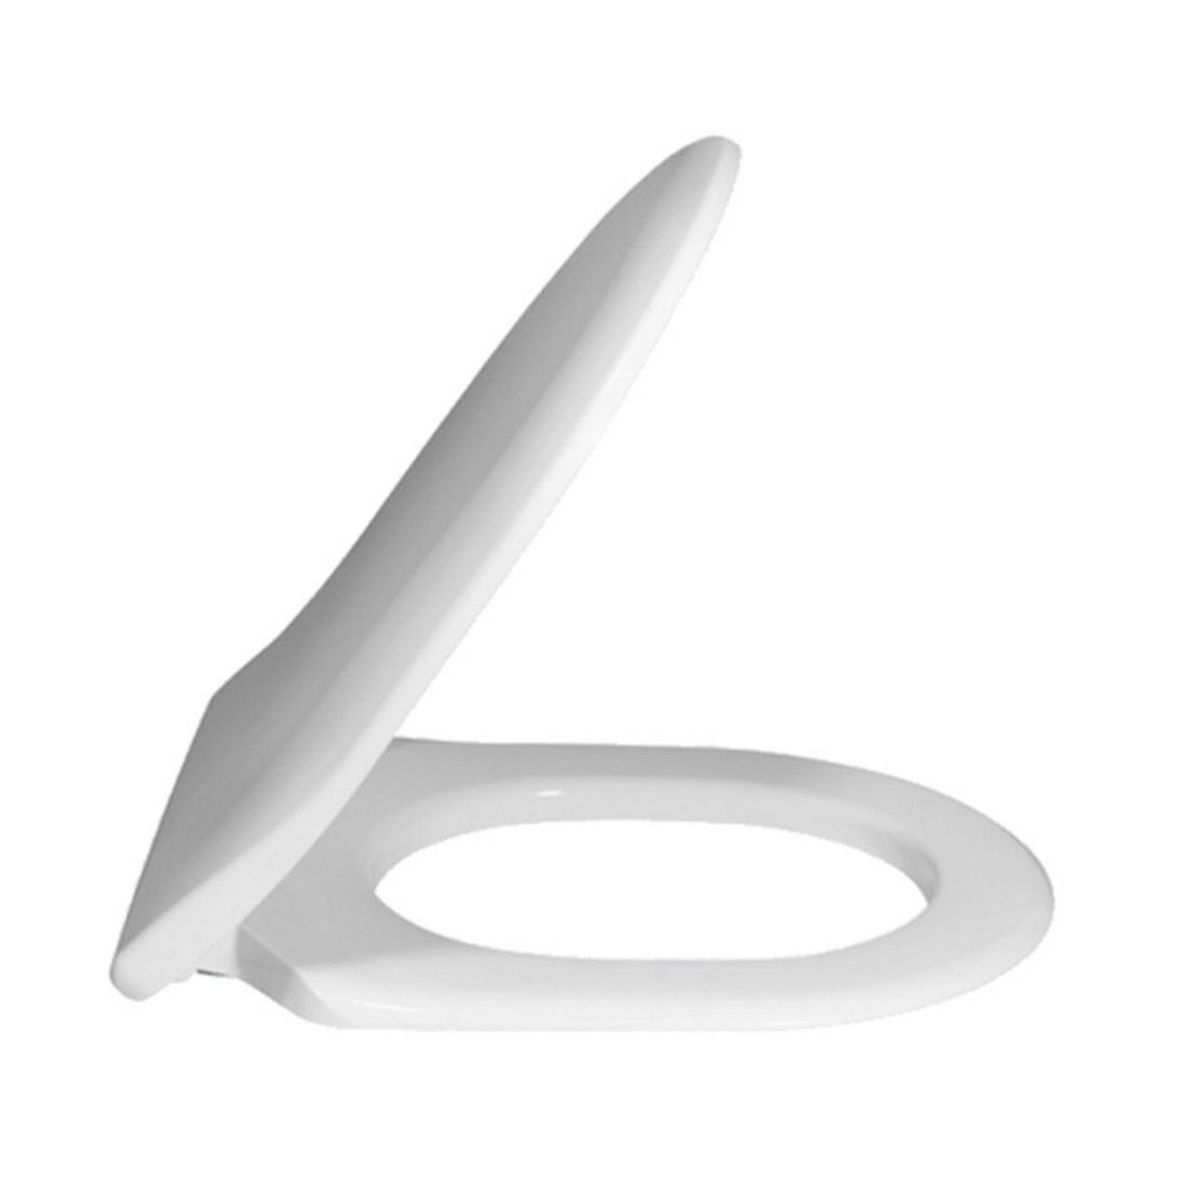 Κάλυμμα Λεκάνης Avento Slim Soft Closing -Quick Release Λευκό Vb 9M87S101 Villeroy and Boch